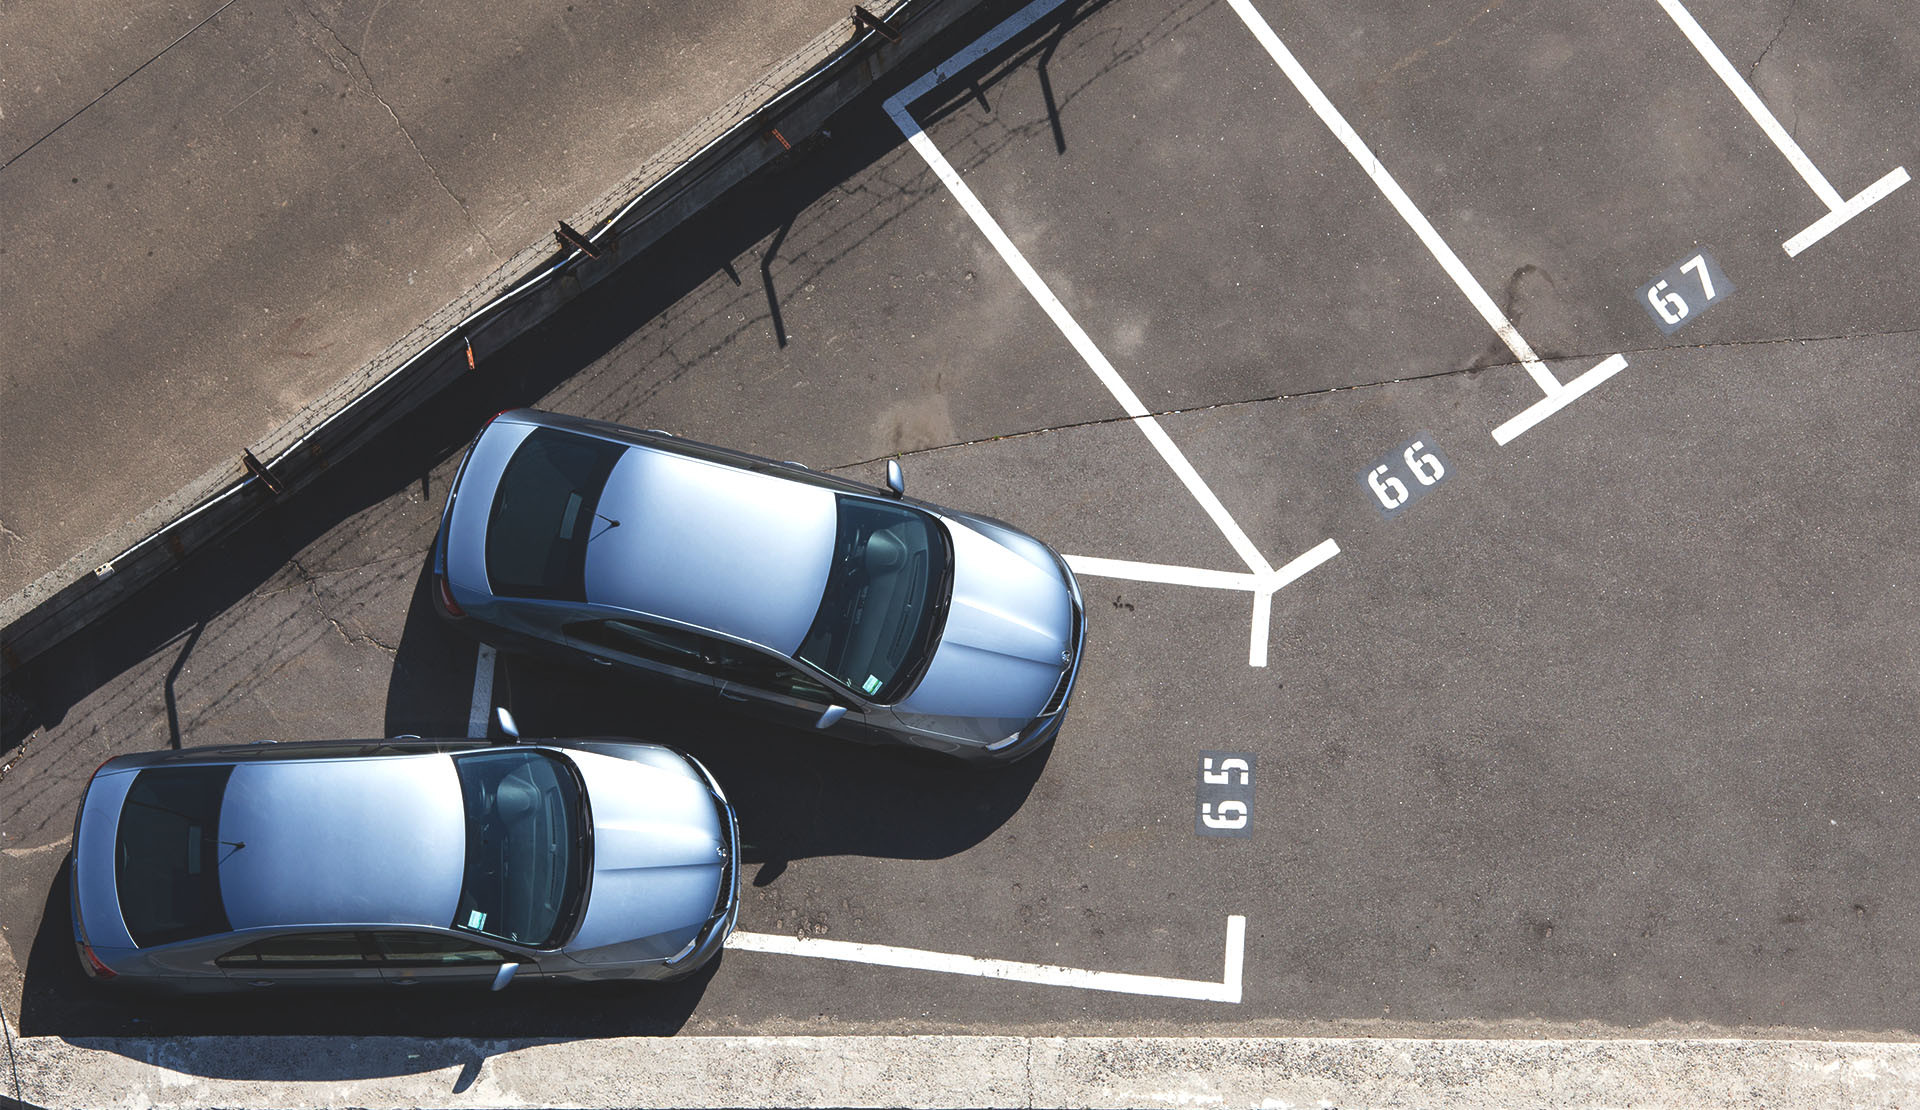 Utrudnianie dostępu do pojazdu poprzez parkowanie może poskutkować mandatem